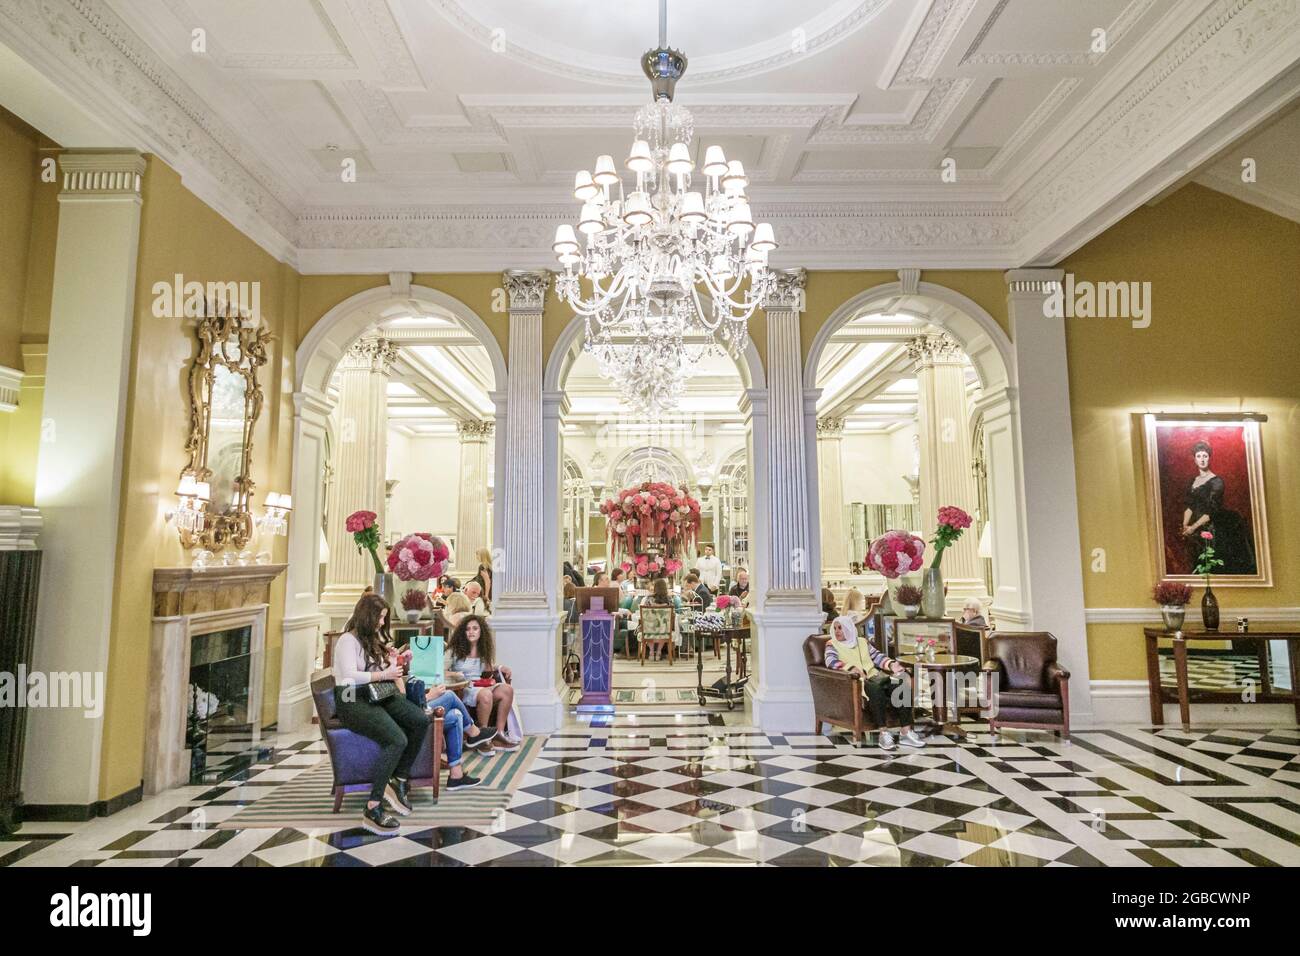 Londres Inglaterra, Reino Unido, Mayfair Claridge's hotel 5 estrellas edificio histórico de lujo, interior del vestíbulo araña candelabro blanco negro tablero de ajedrez suelo de mármol, Foto de stock